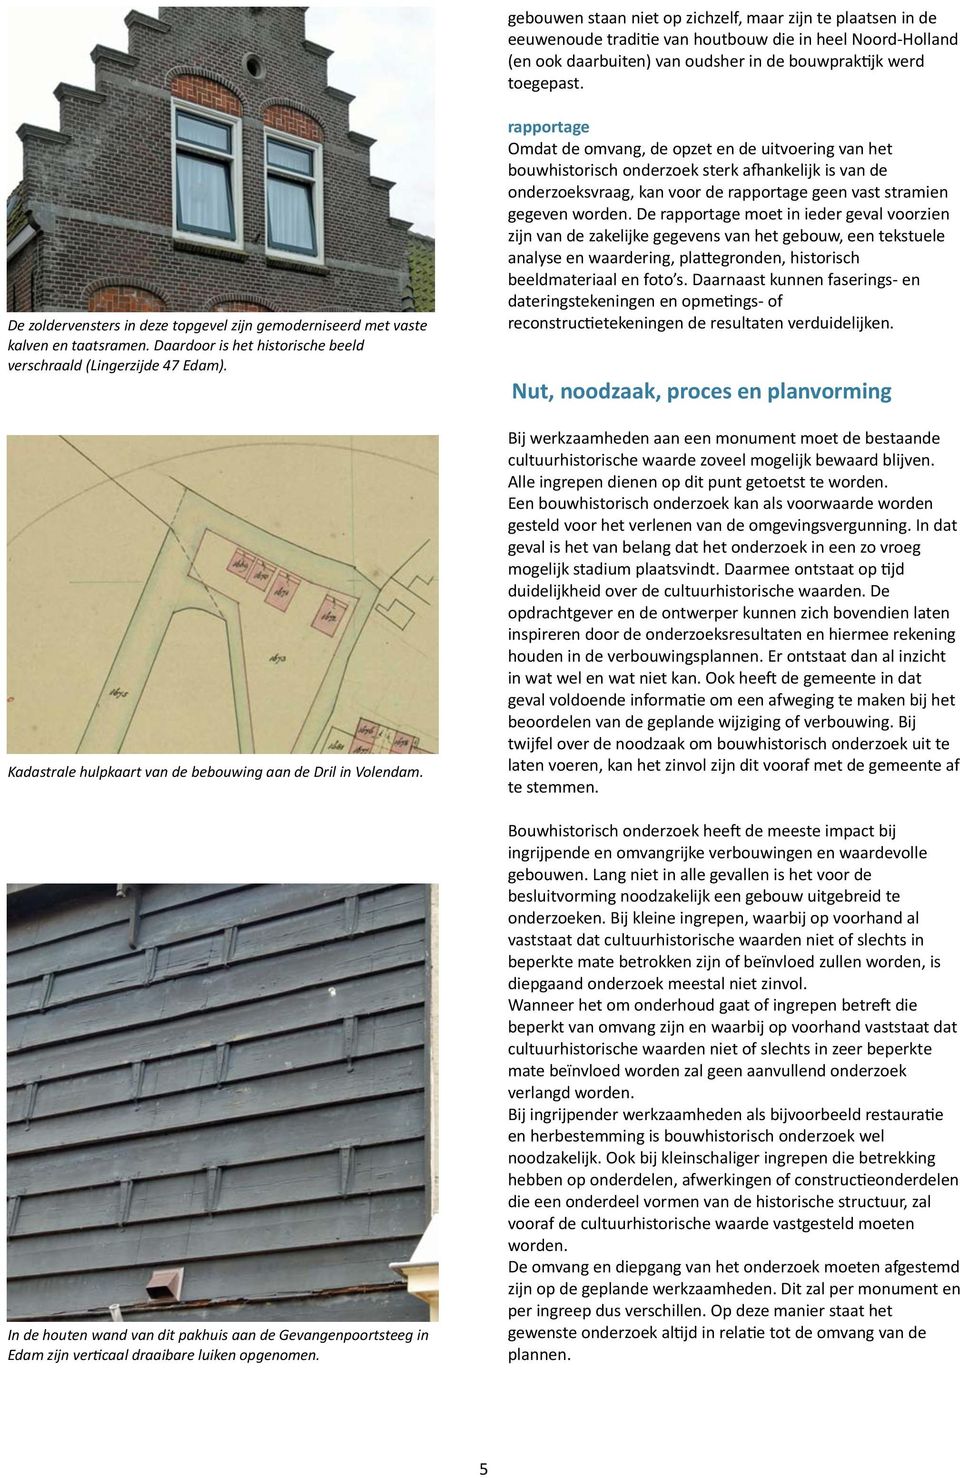 Kadastrale hulpkaart van de bebouwing aan de Dril in Volendam. In de houten wand van dit pakhuis aan de Gevangenpoortsteeg in Edam zijn verkcaal draaibare luiken opgenomen.